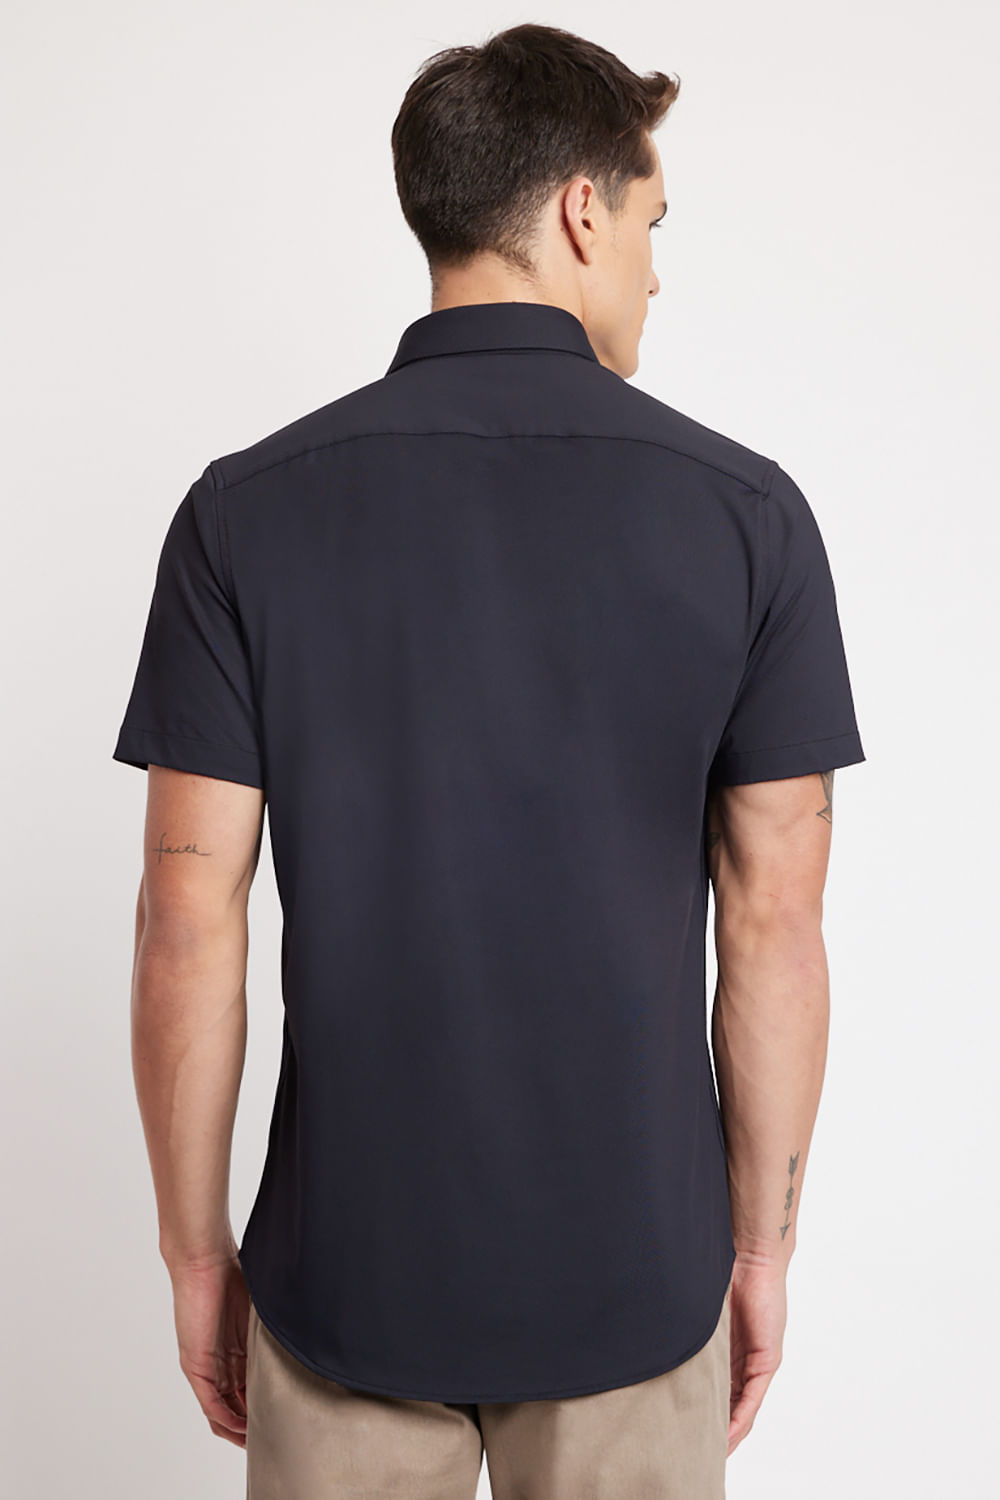 Bodysuit Preto Asos, Camiseta Masculina Asos Usado 94747217